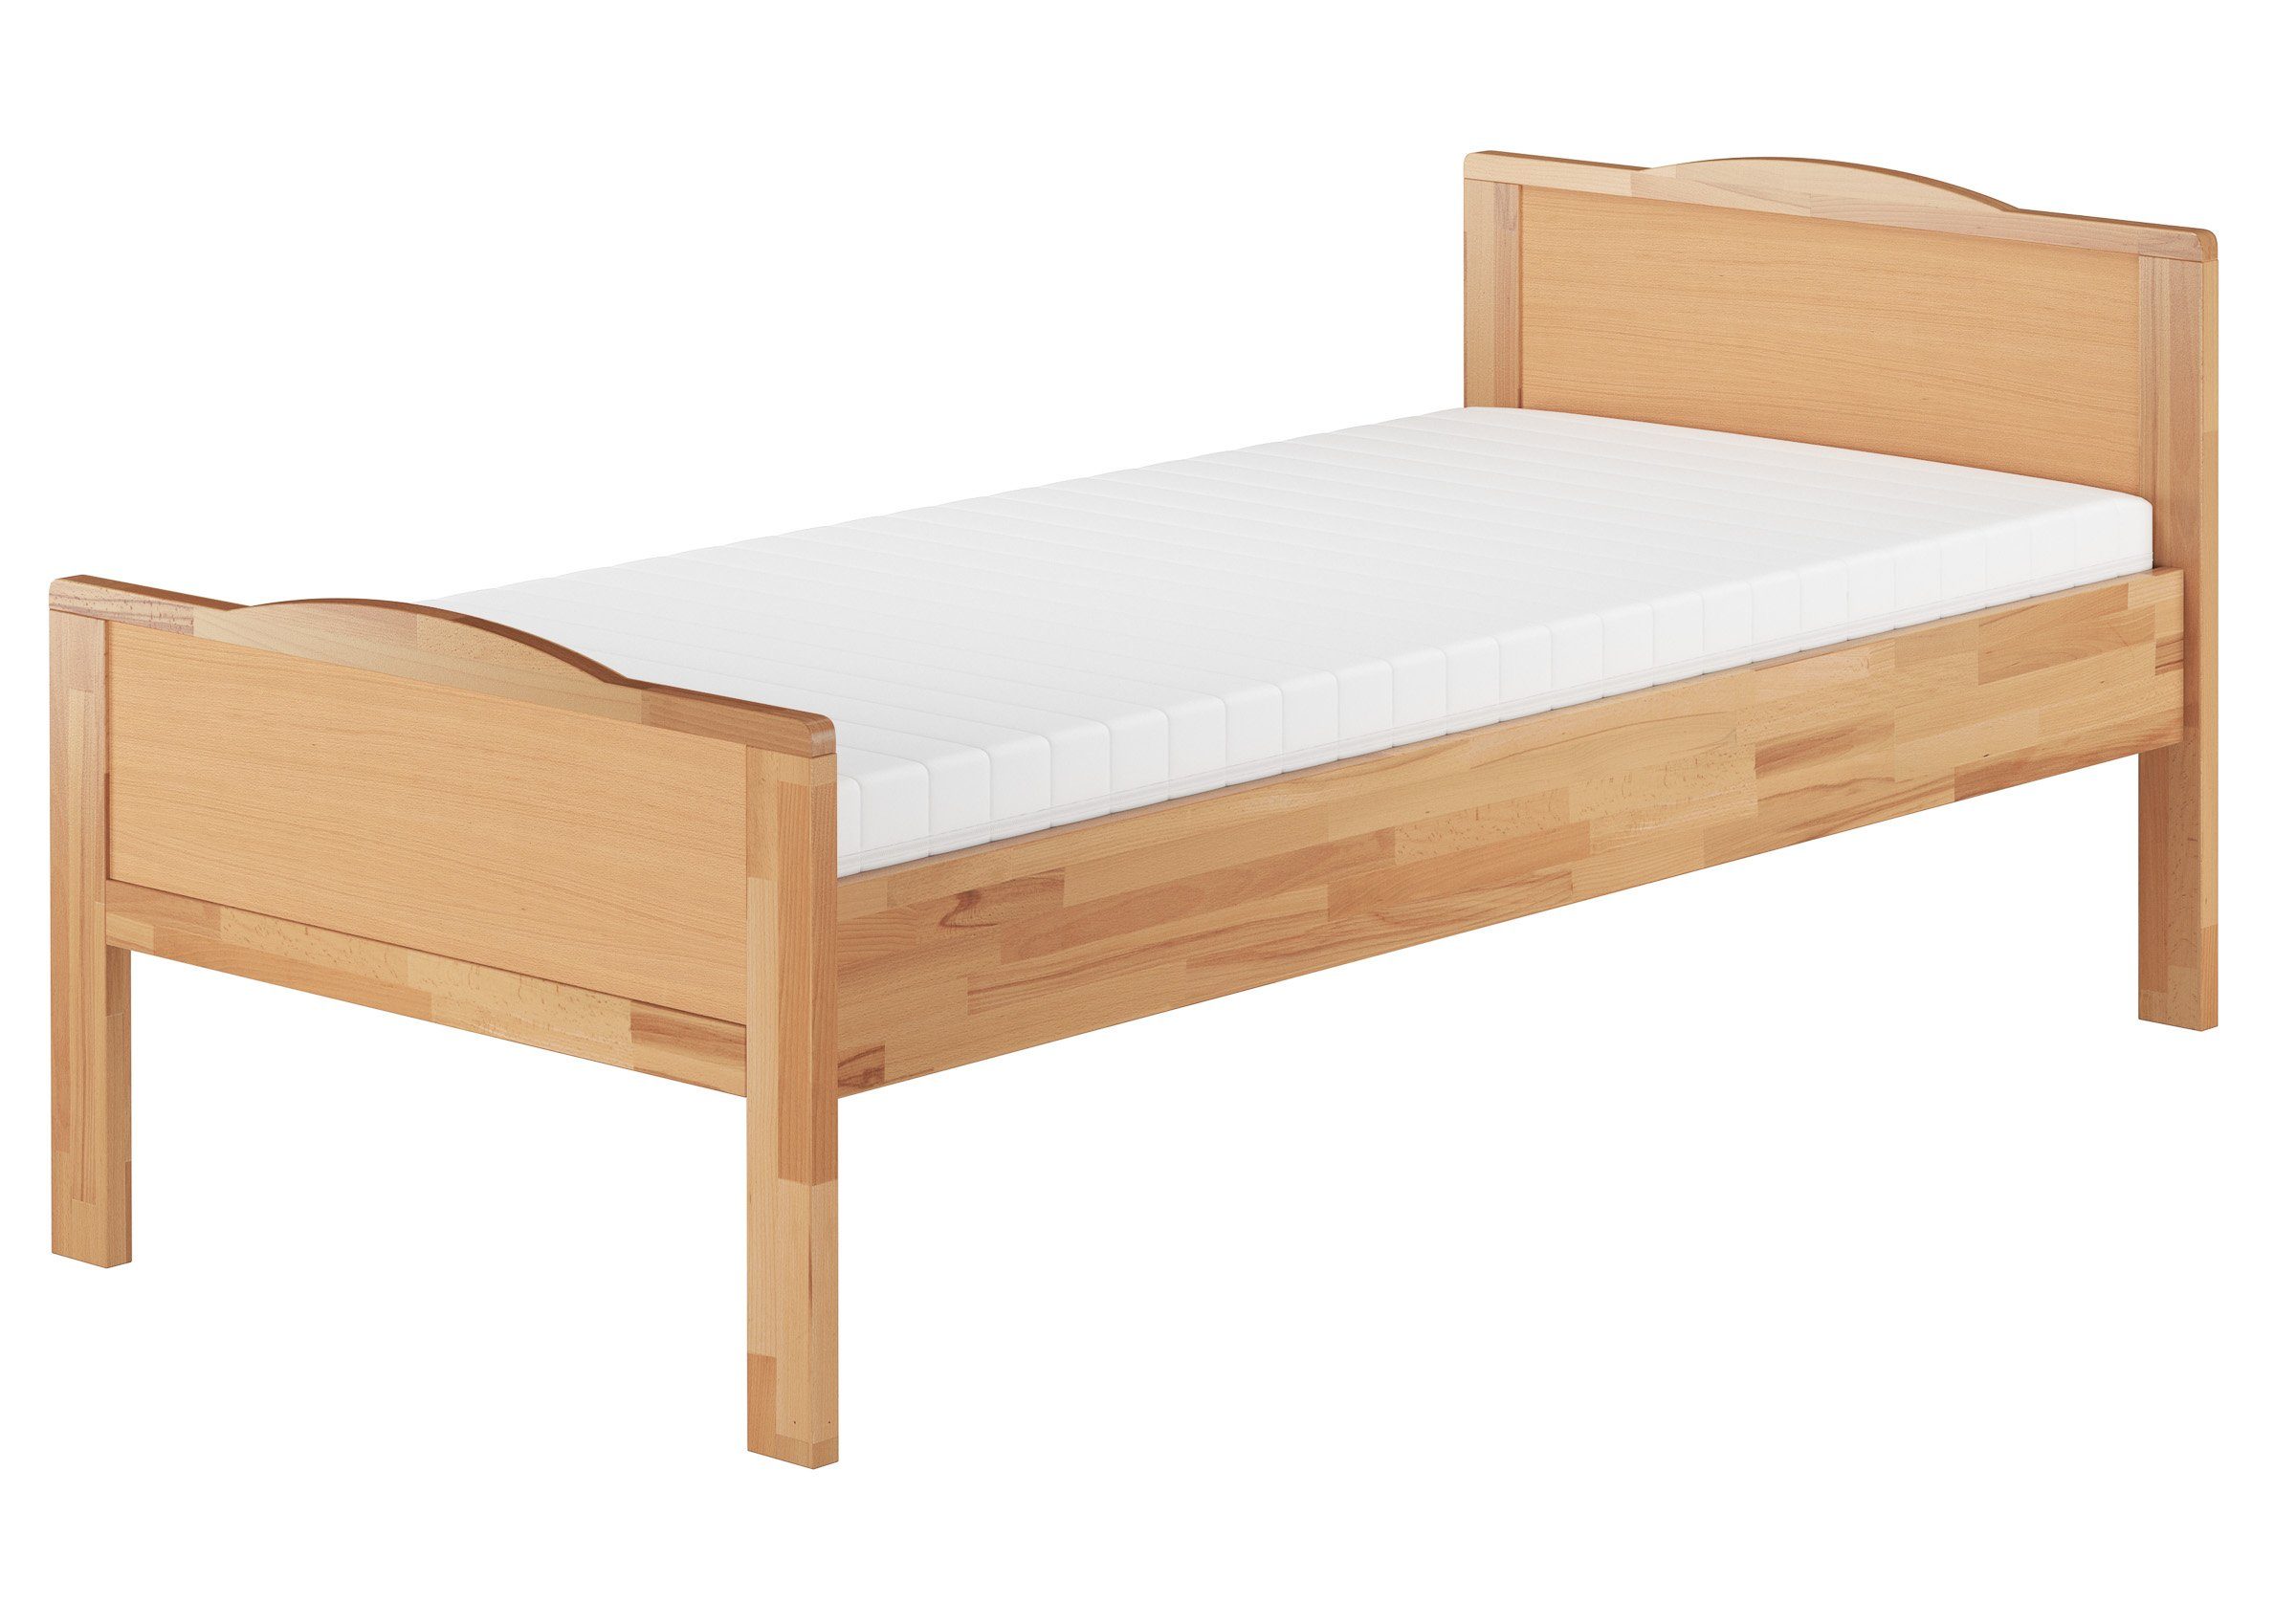 ERST-HOLZ Bett Seniorenbett extra hoch Buche mit Federleisten und Matratze, Buchefarblos lackiert